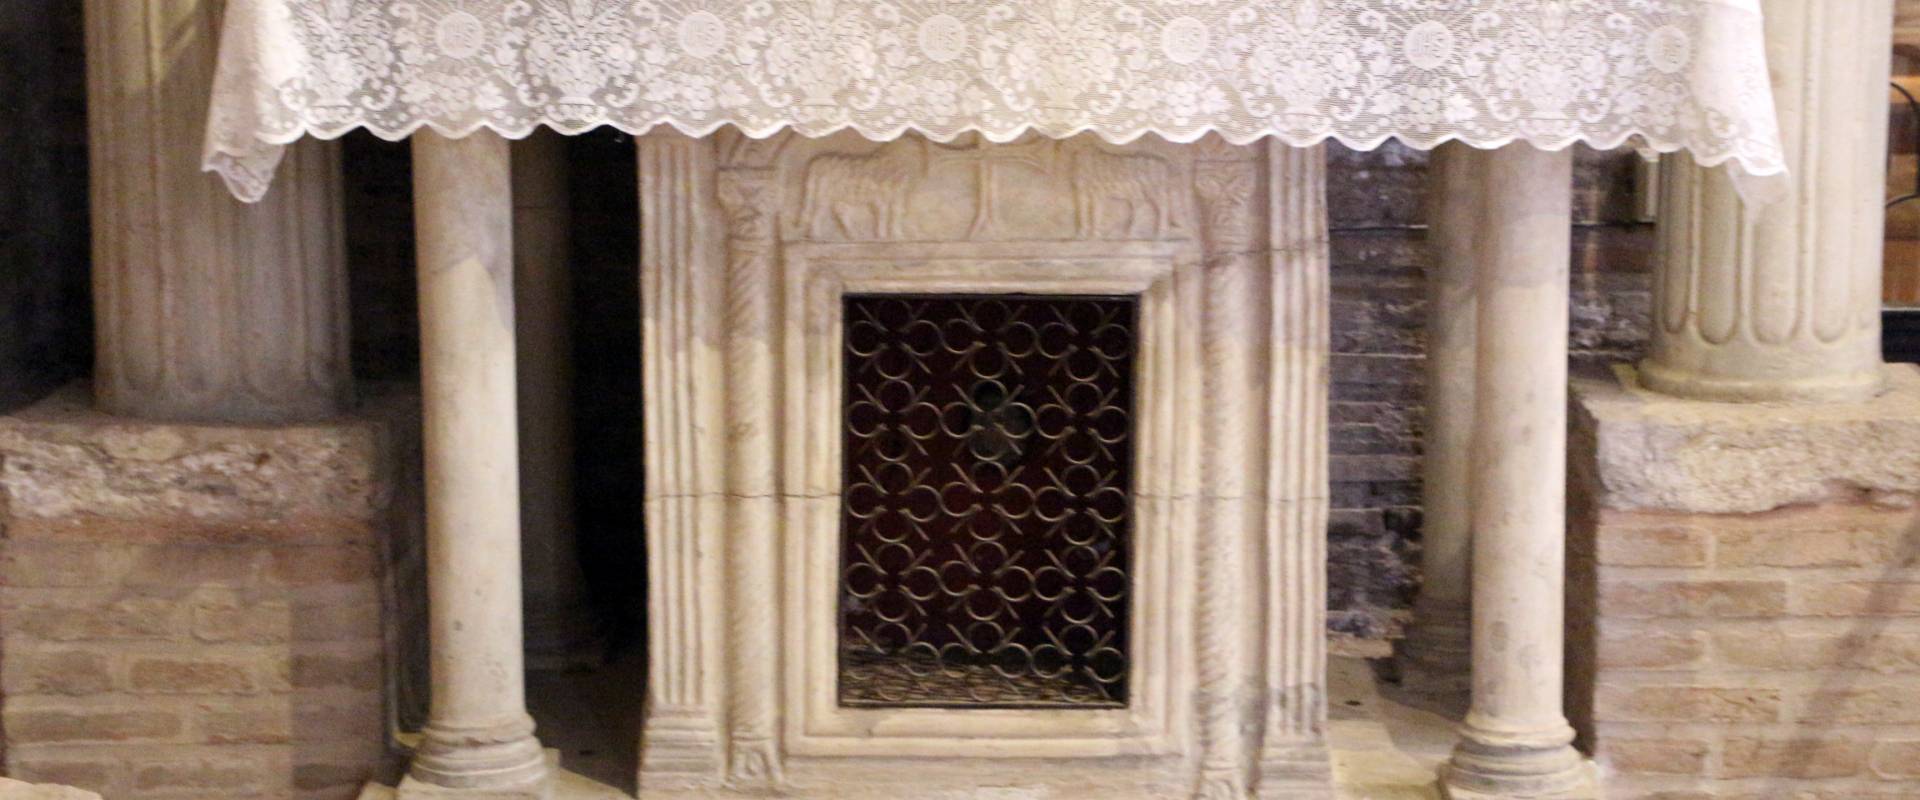 Sant'apollinare in classe, interno, altare di s. felicola con ciborio di s. eleucadio (810 ca.), altare del VII secolo foto di Sailko